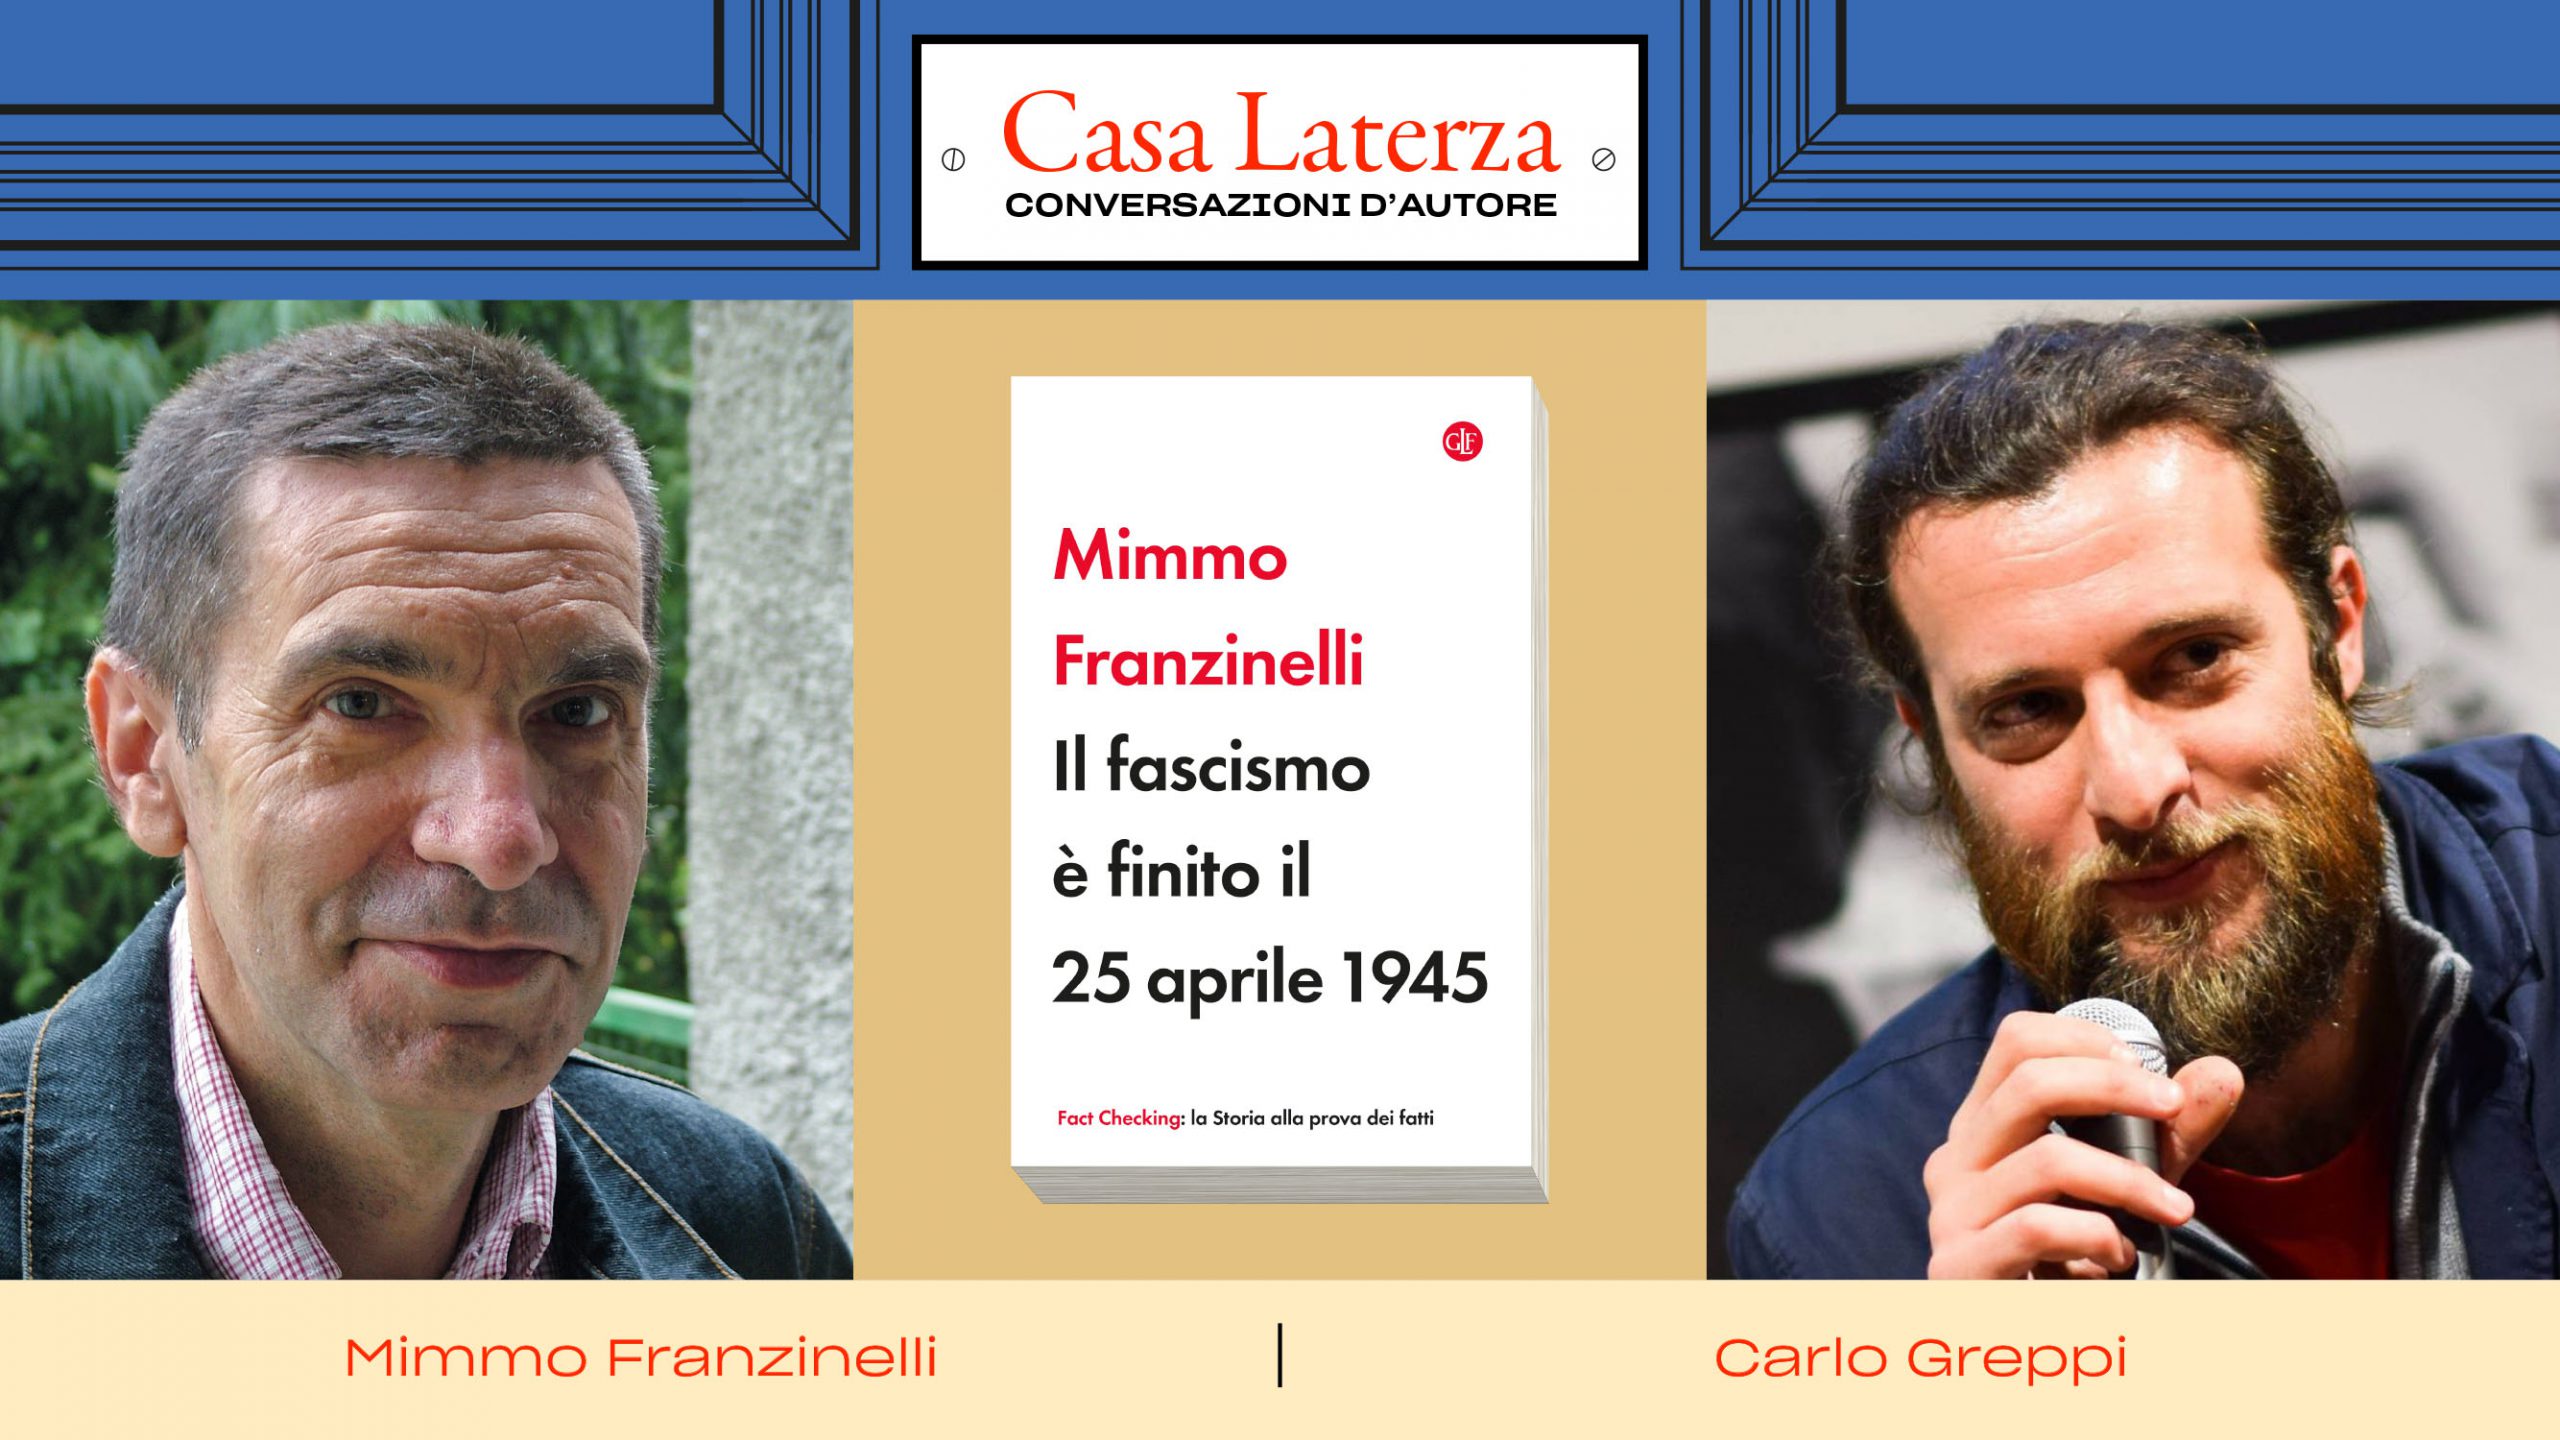 #CasaLaterza: Mimmo Franzinelli dialoga con Carlo Greppi